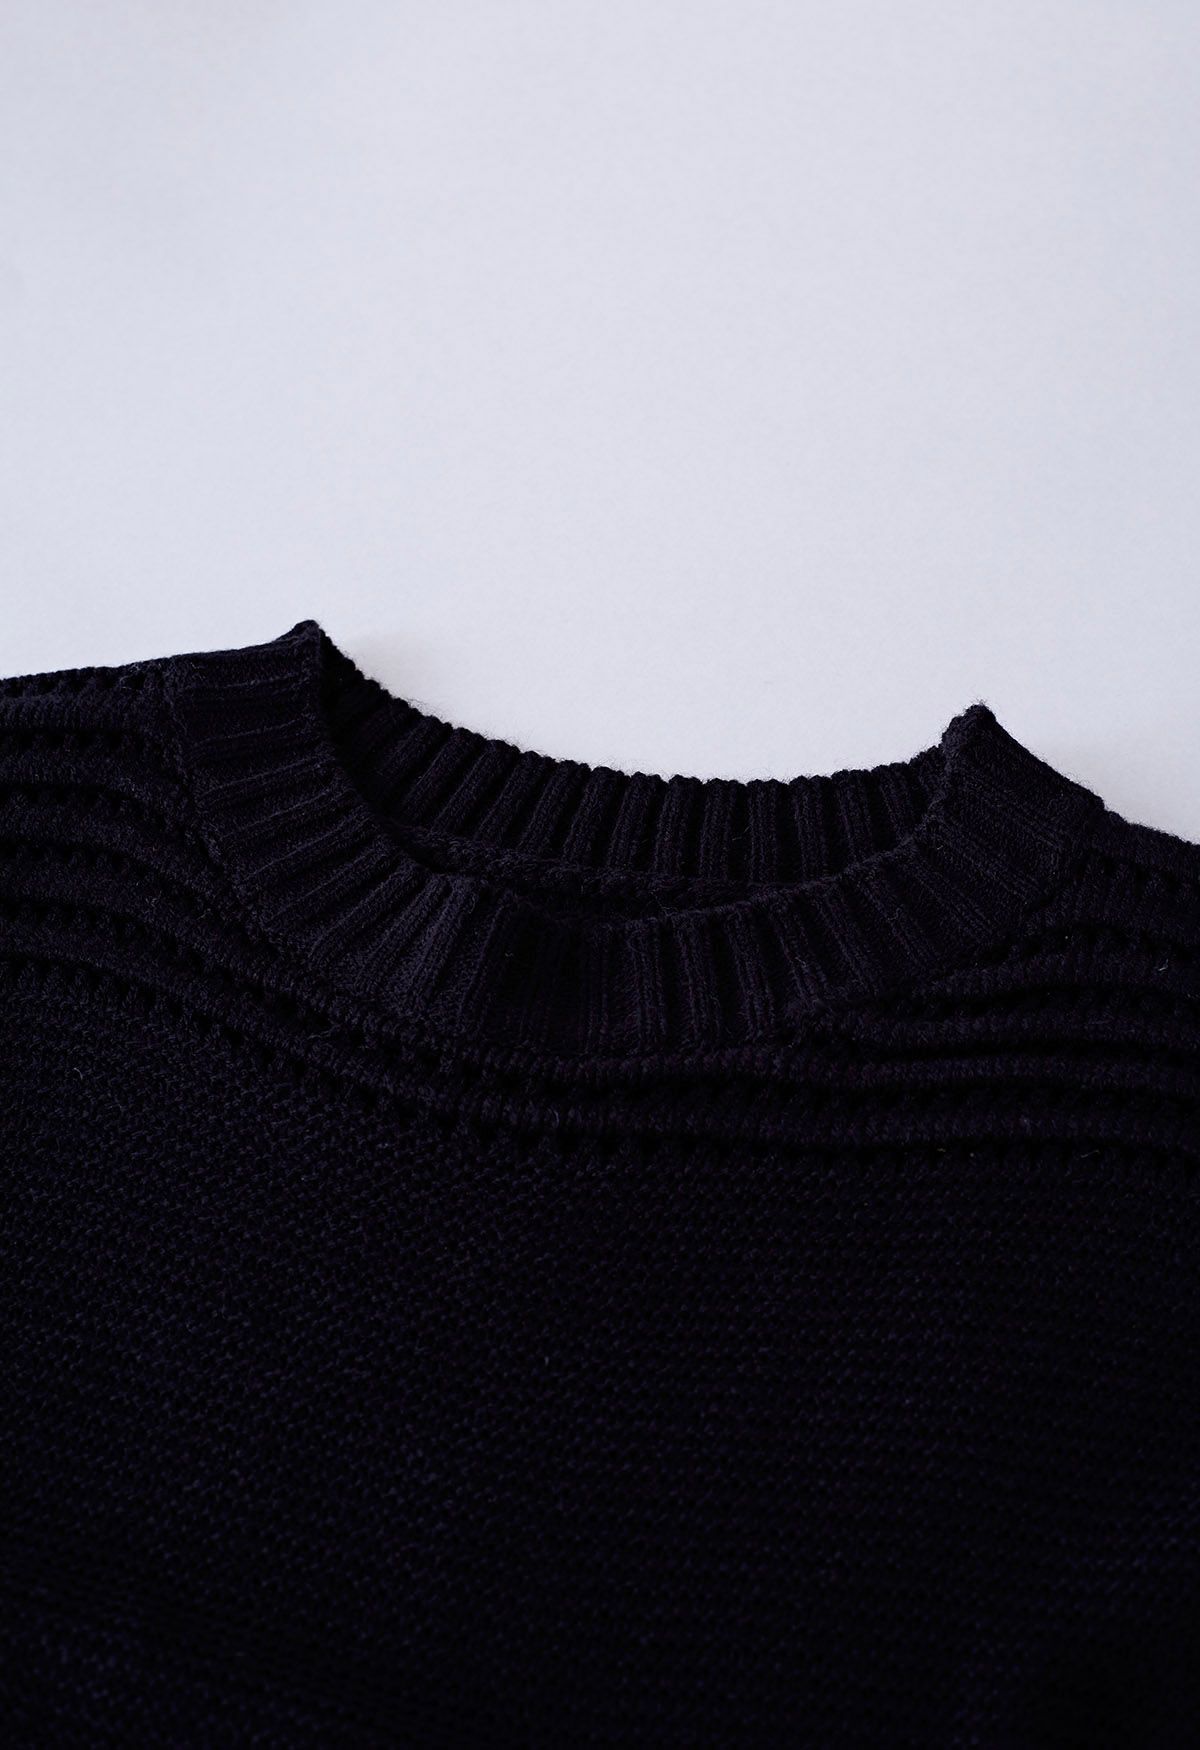 Suéter de punto calado con rayas en relieve en negro